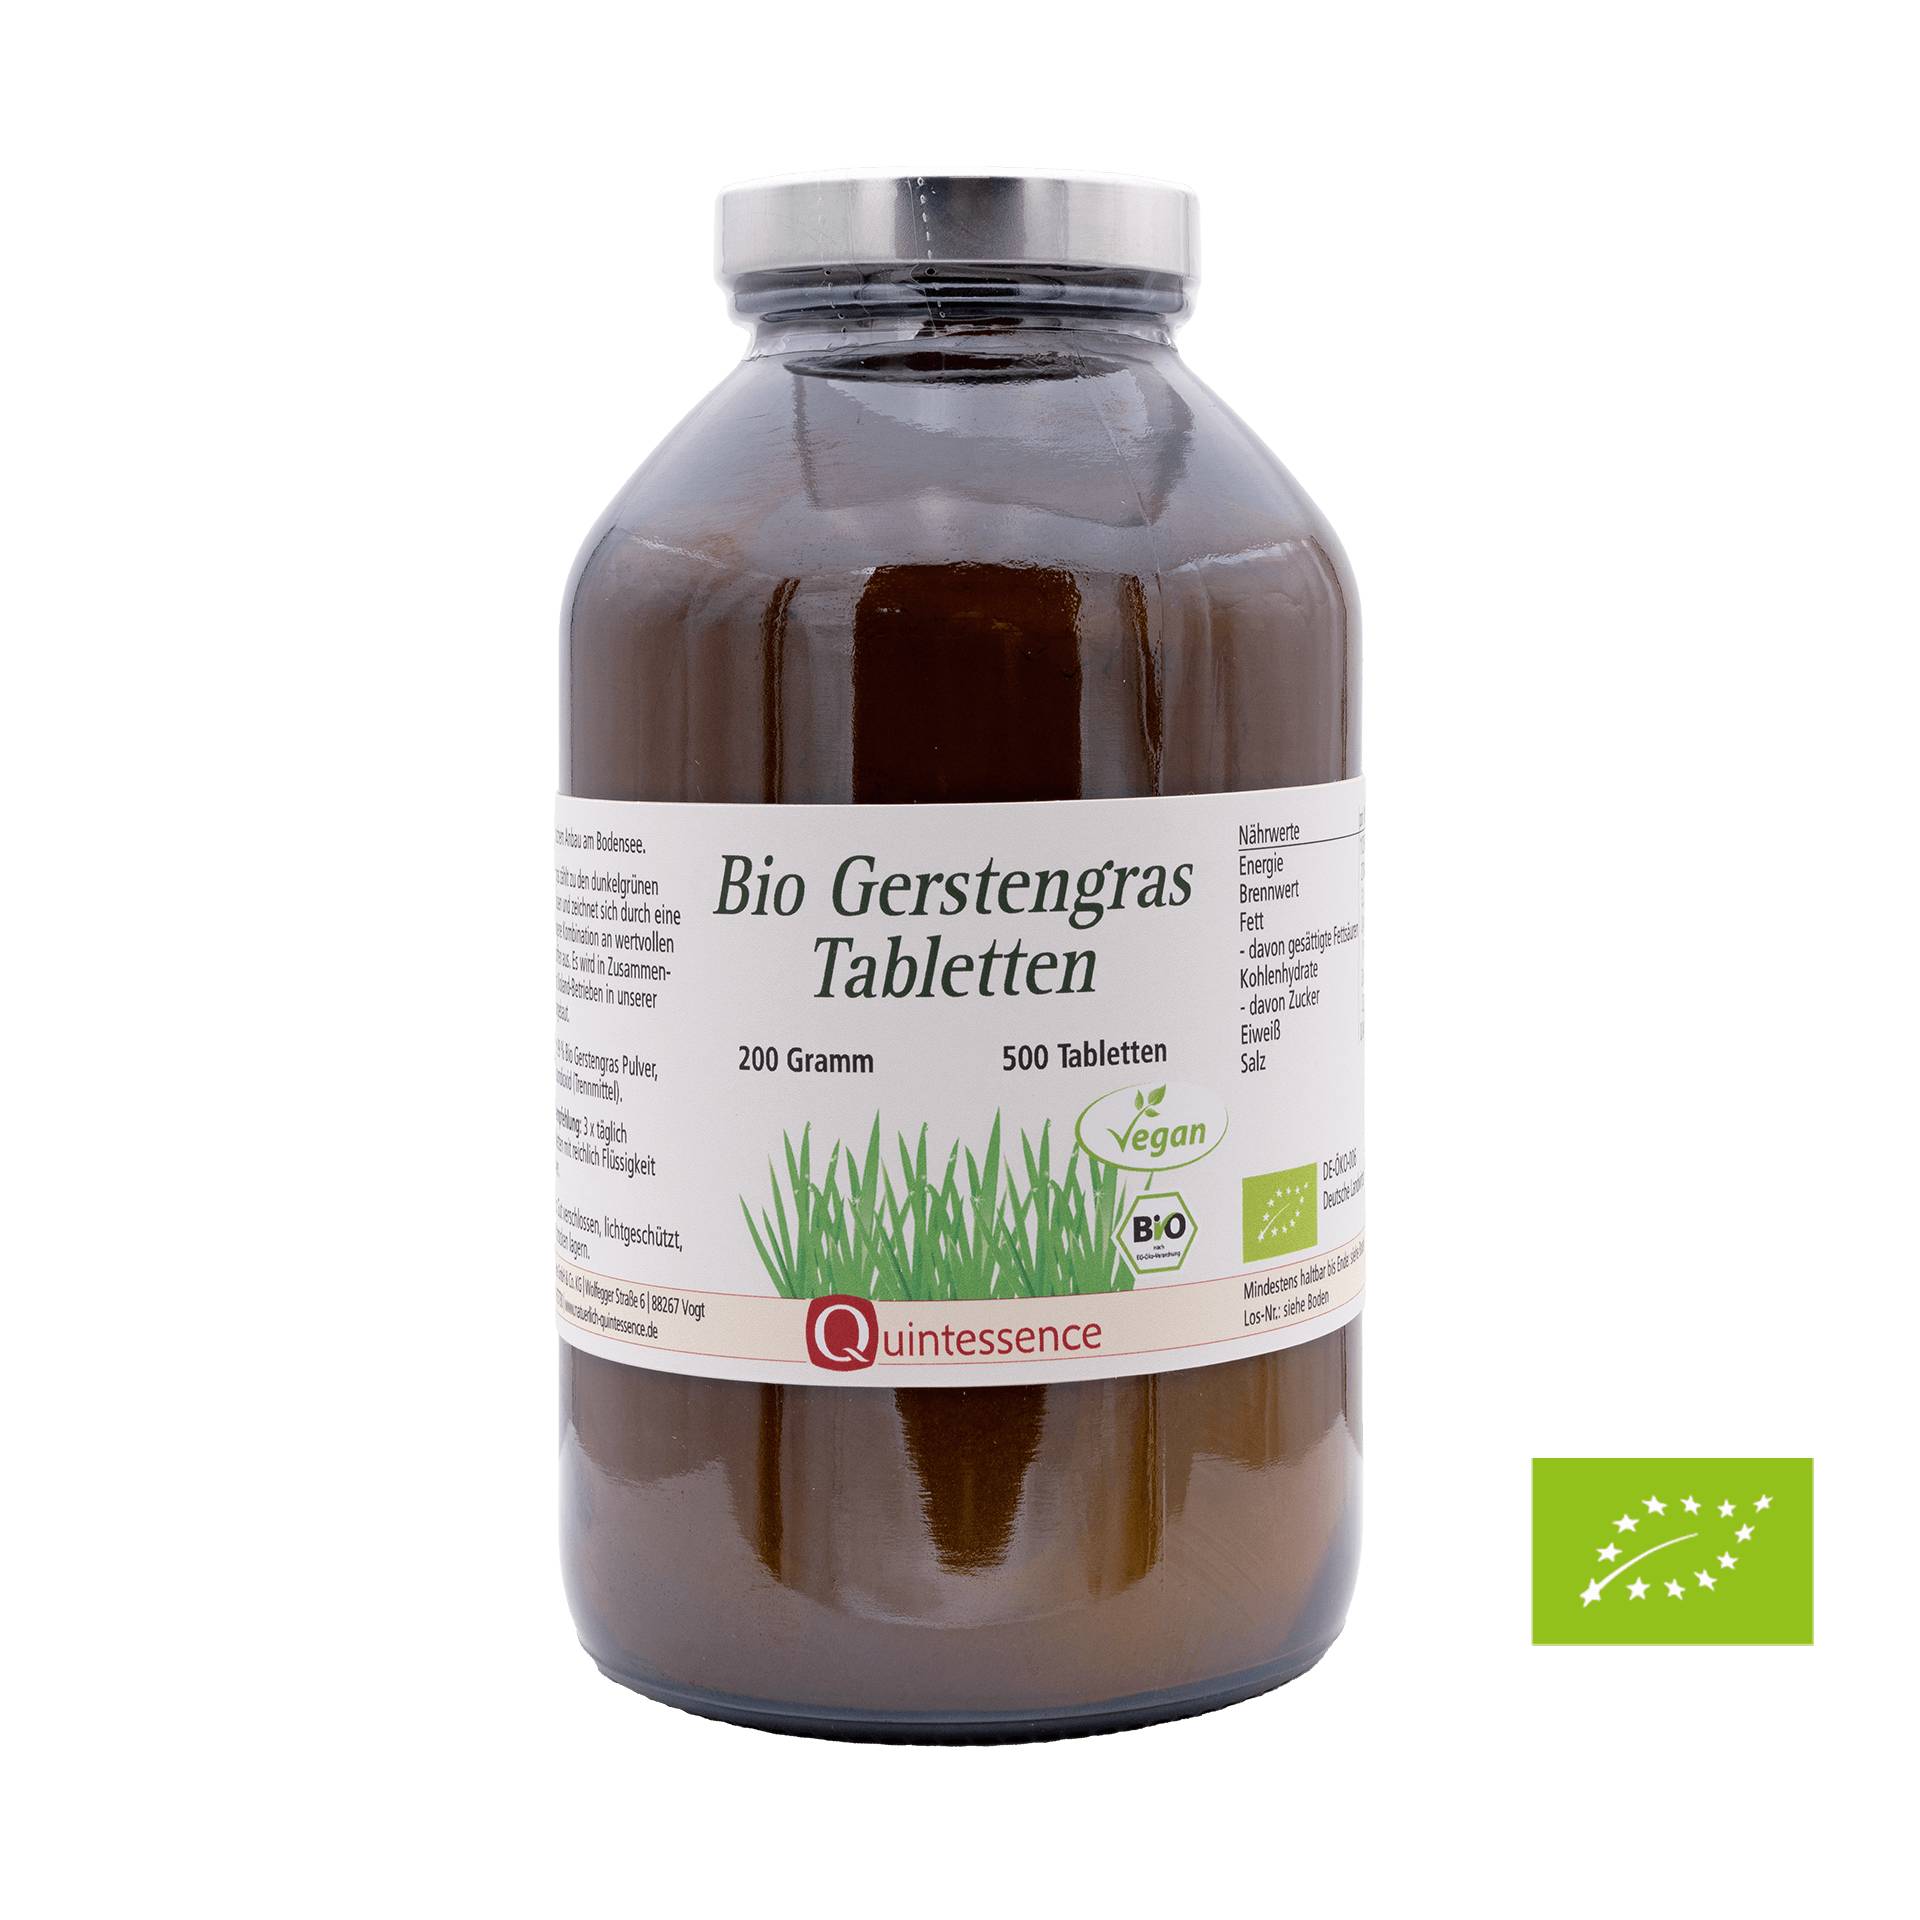 Bio Gerstengras Tabletten 500 Stück - Aus nachhaltigem Anbau in der Bodensee Region - Vegan - Quintessence von Quintessence